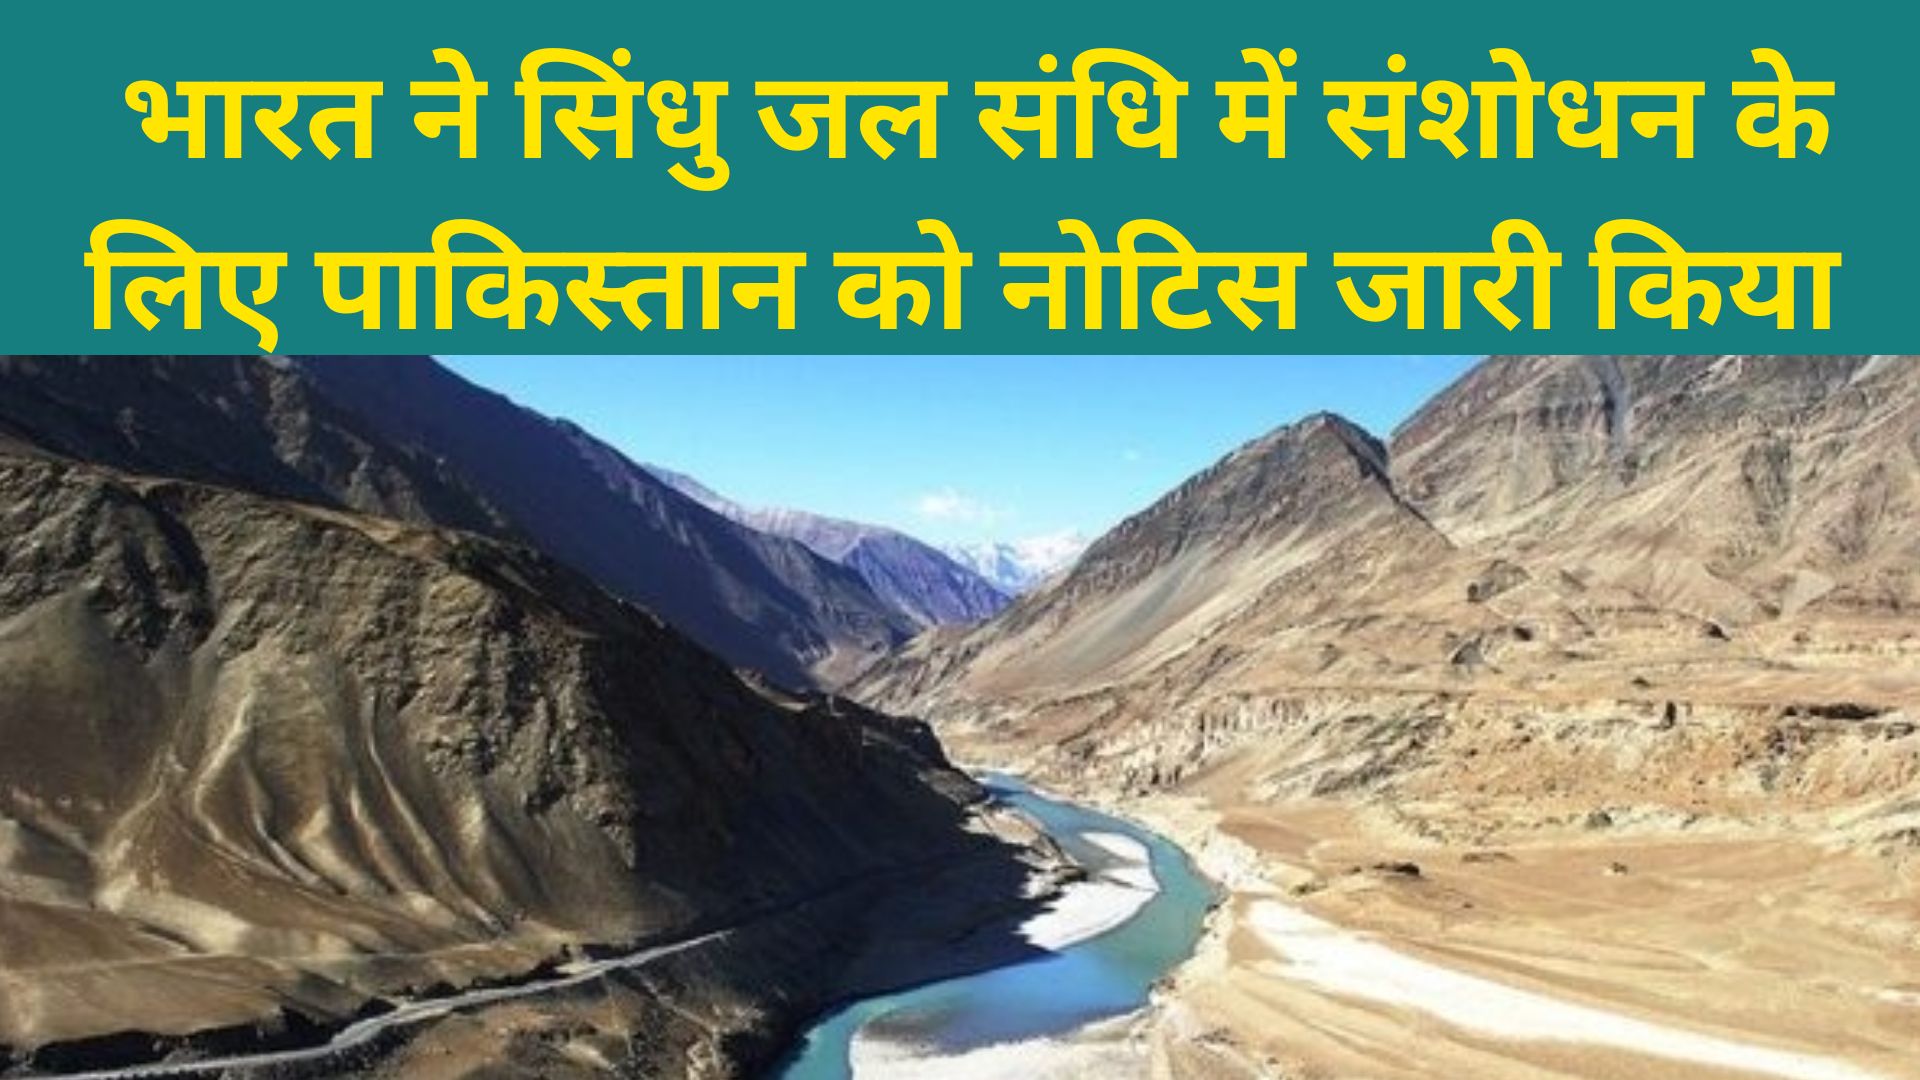 Indus Water Treaty : भारत ने सिंधु जल संधि में संशोधन के लिए पाकिस्तान को नोटिस जारी किया 